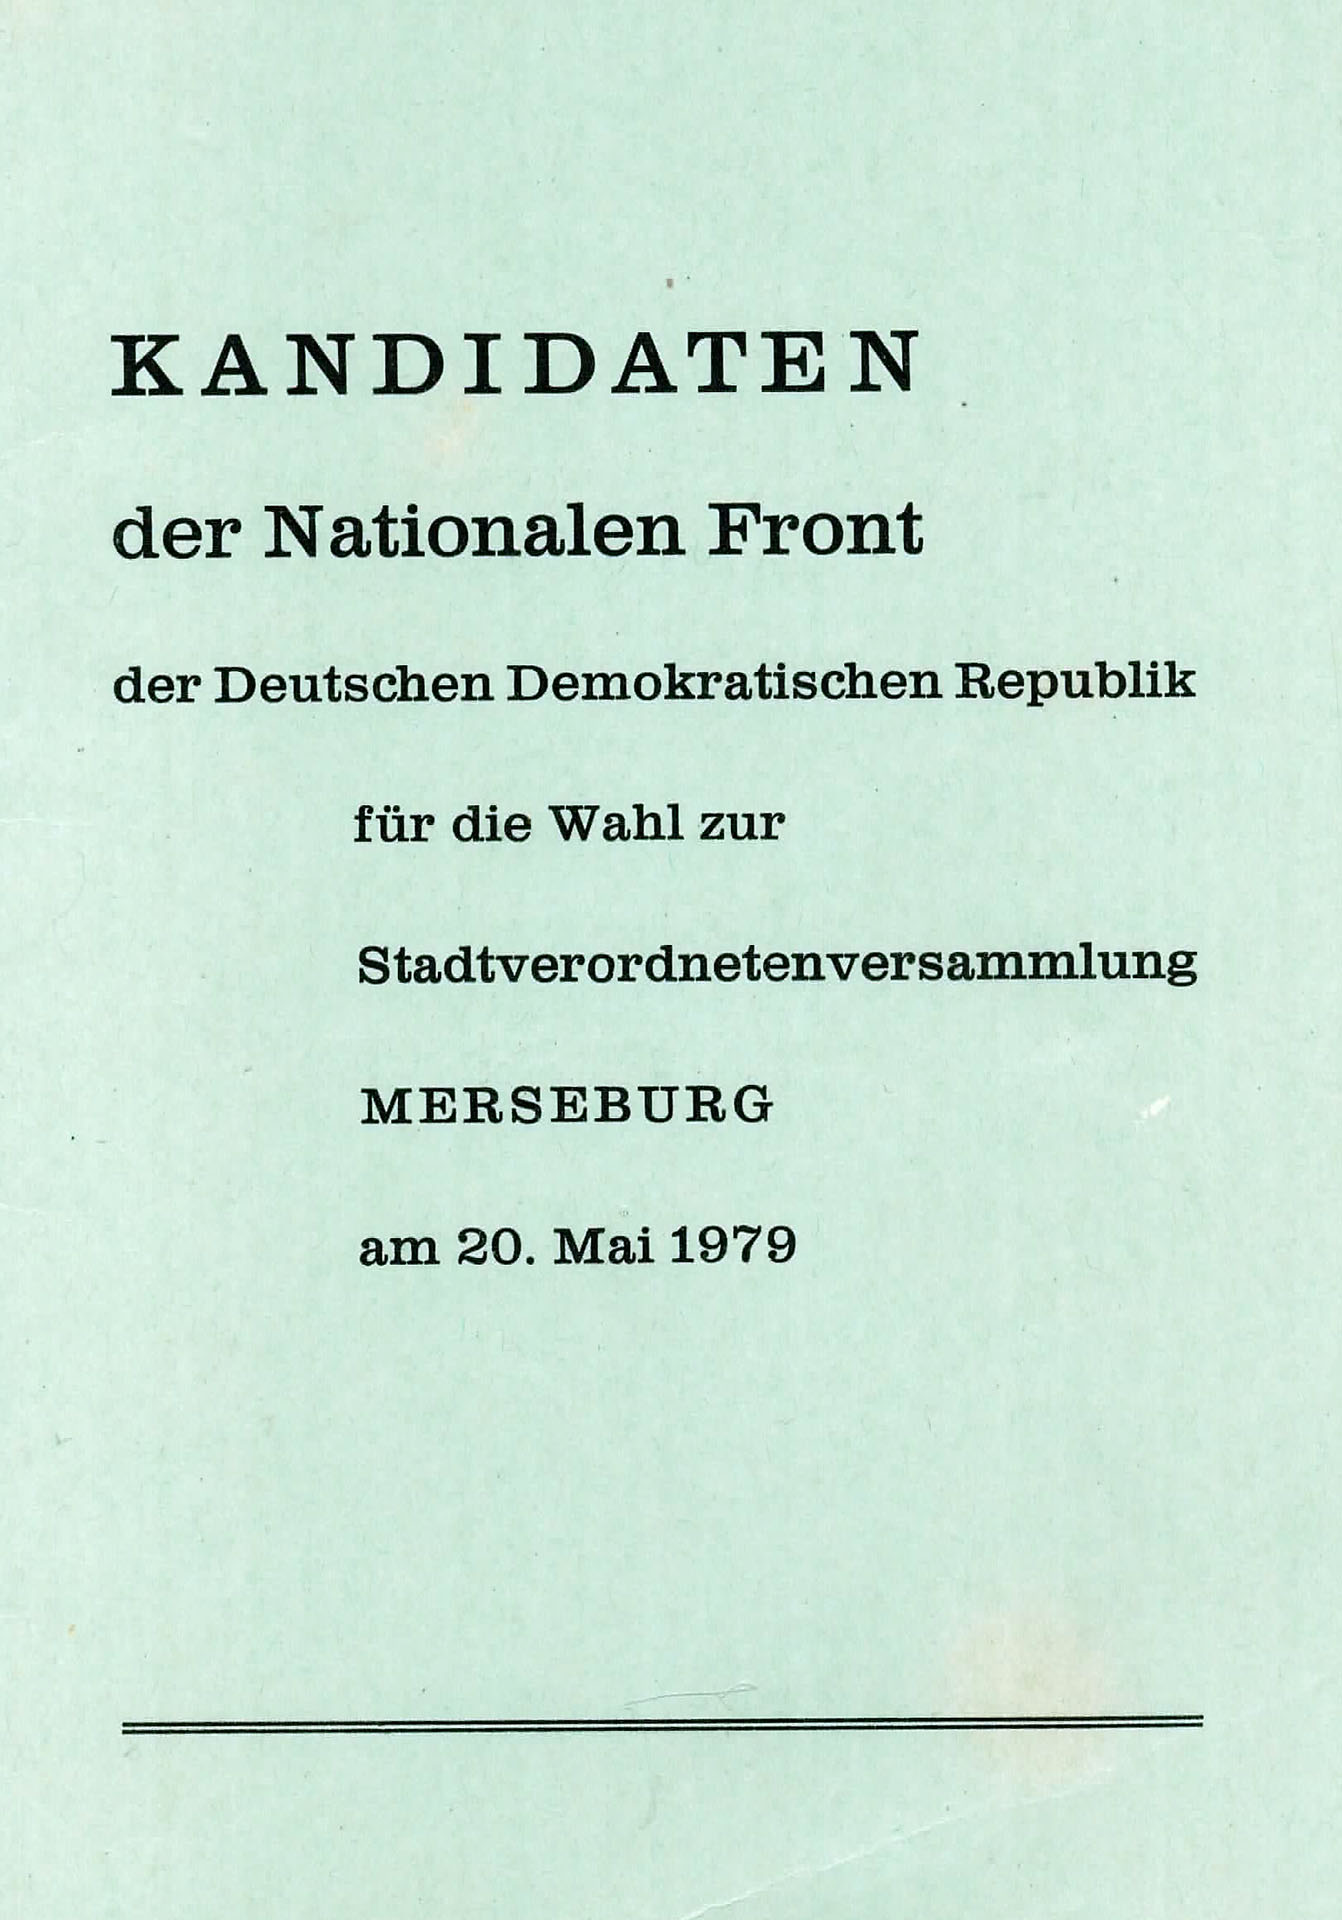 Kandidaten der Nationalen Front - Wahlkommission der Stadt Merseburg